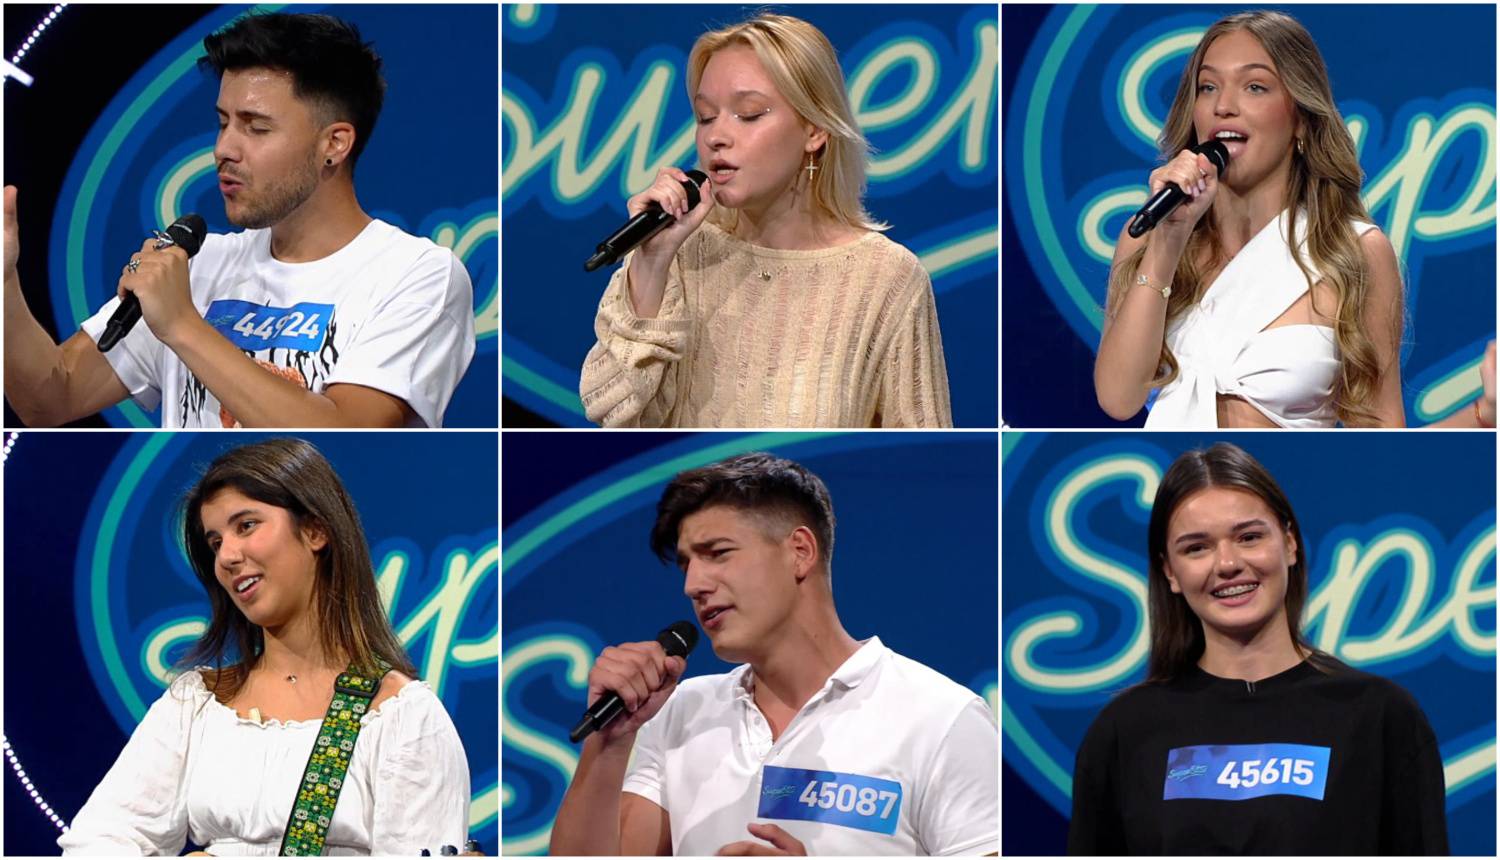 ANKETA Deset kandidata prošlo je dalje u natjecanje. Tko je po vašem mišljenju bio najbolji?